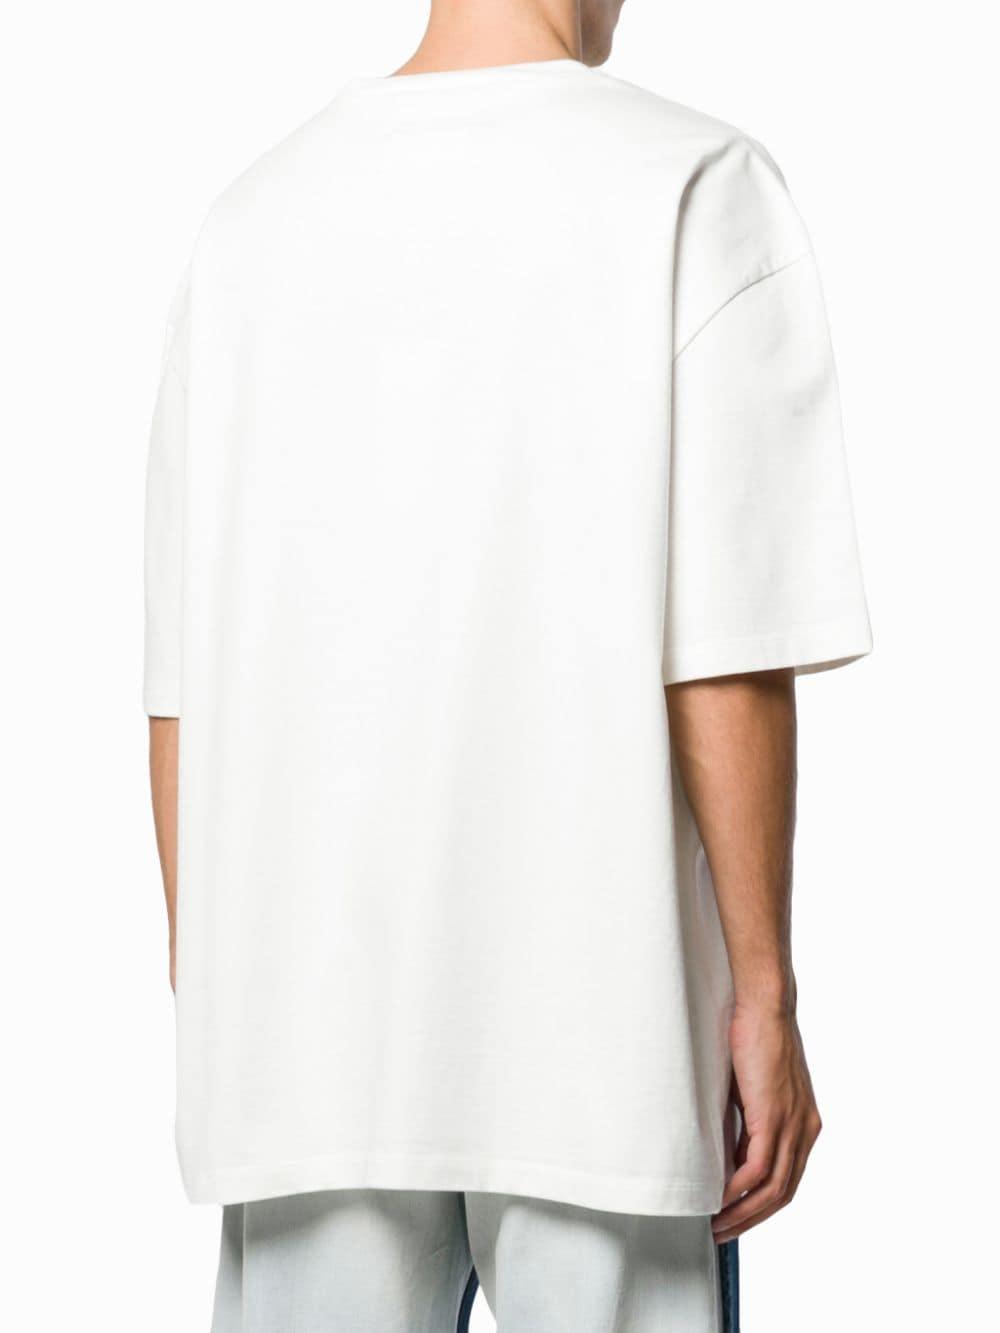 Maison Margiela Logo Print T-shirt in White for Men - Lyst